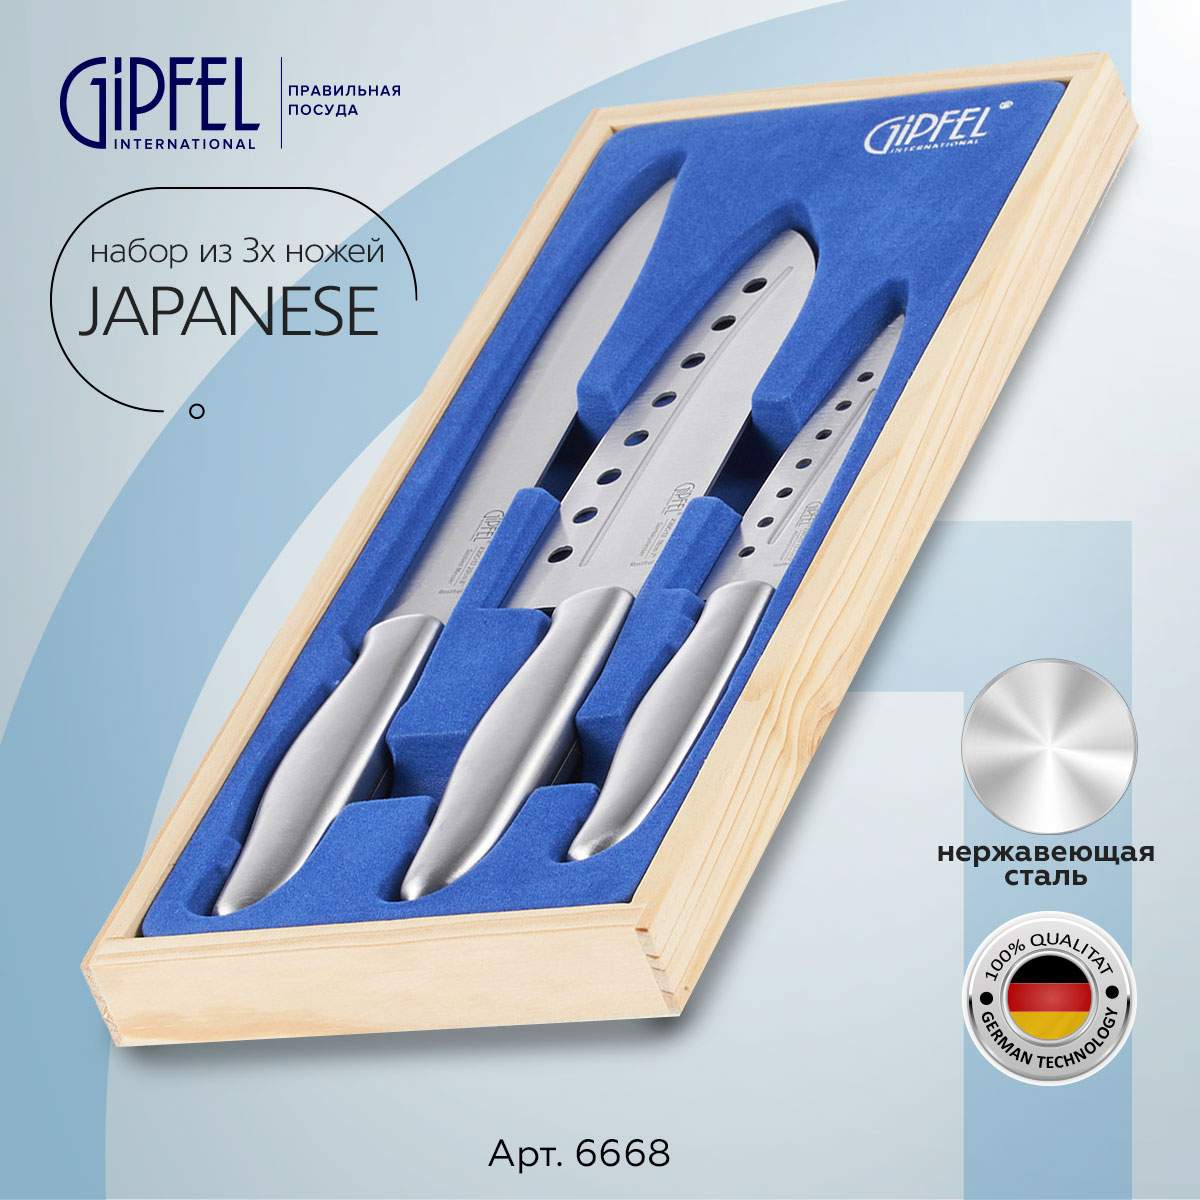 Набор кухонных ножей Gipfel Japanese 6668 - купить в Москве, цены на Мегамаркет | 100023838238